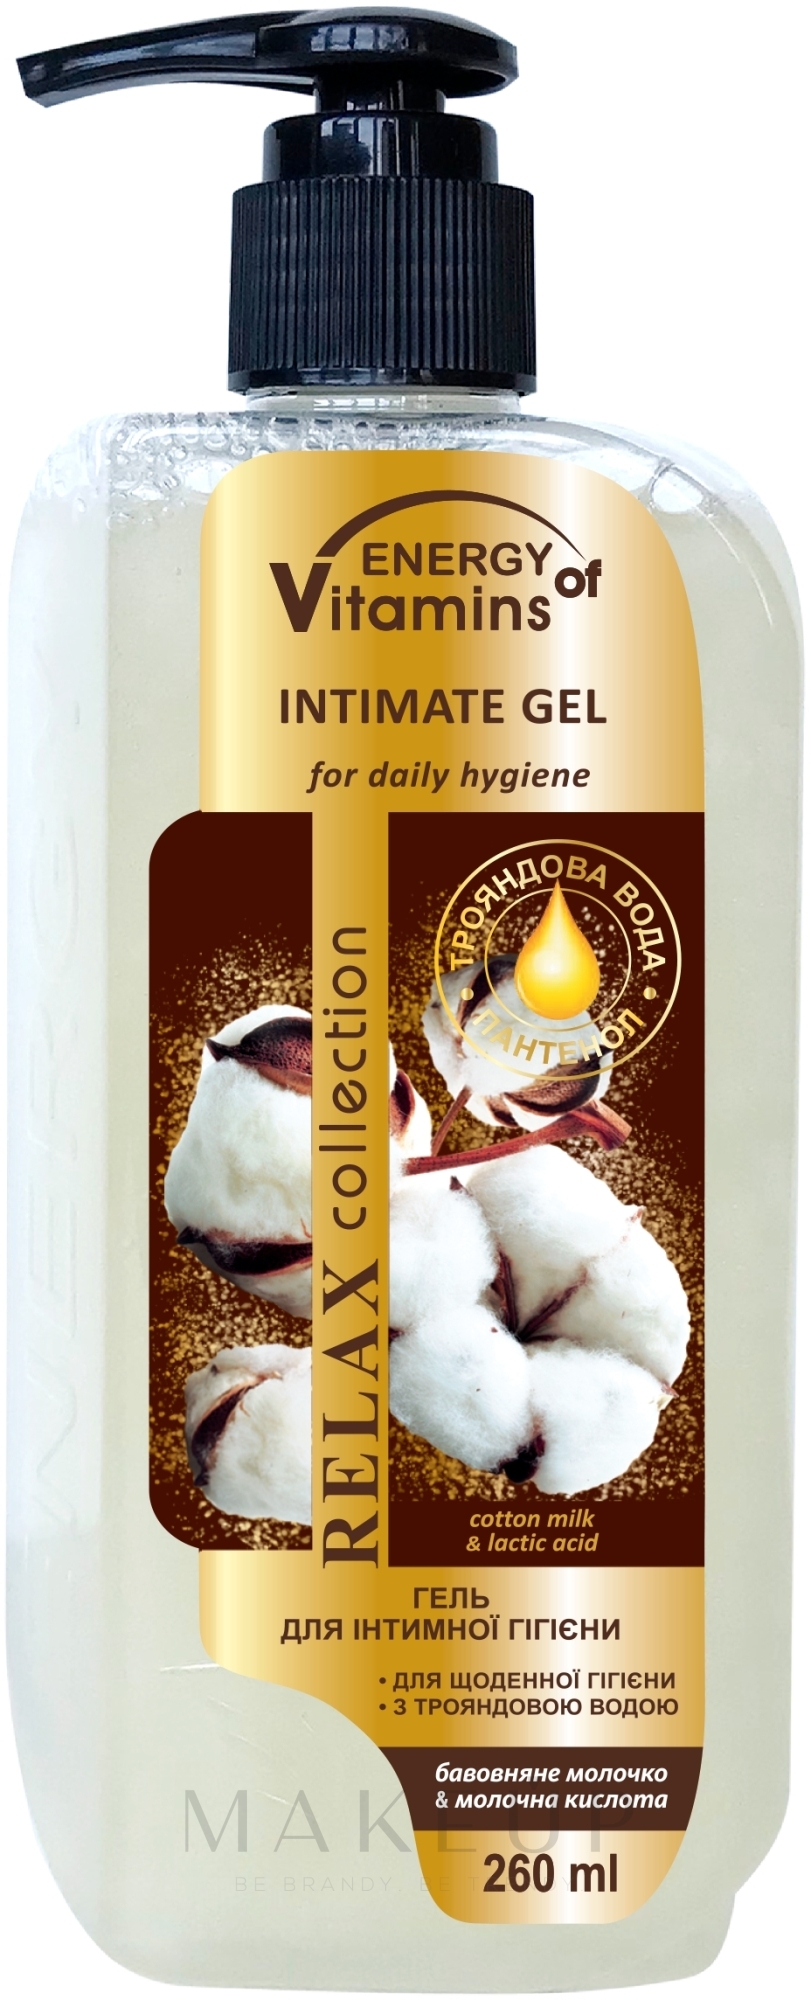 Gel für die Intimhygiene Baumwollsamenmilch und Milchsäure - Leckere Geheimnisse Energy of Vitamins Gel for Intimate Hygiene — Foto 260 ml